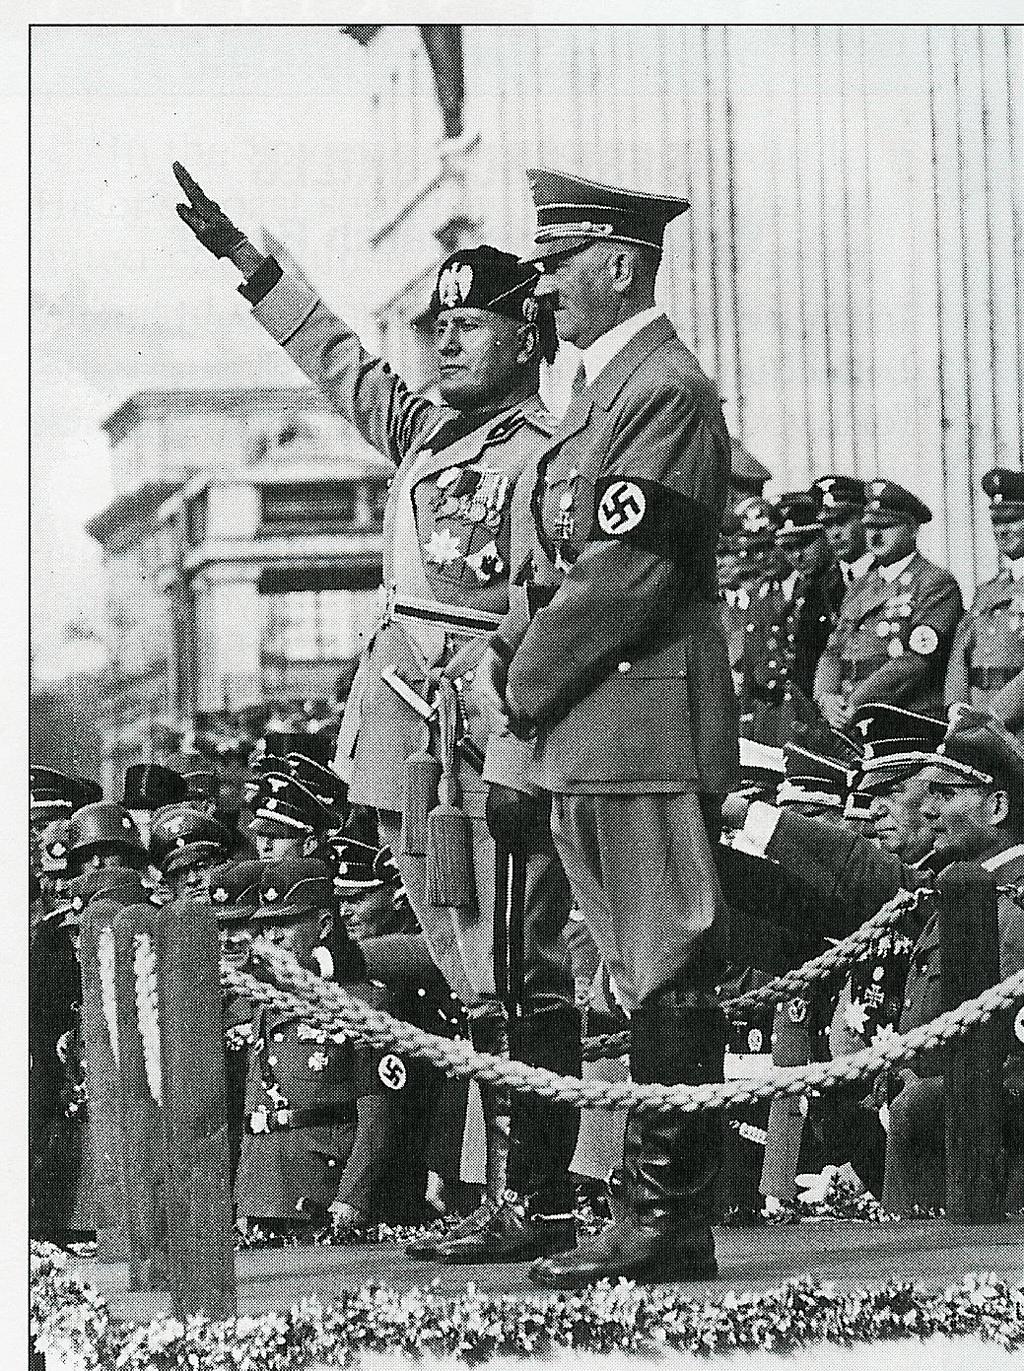 Benito Mussolini and